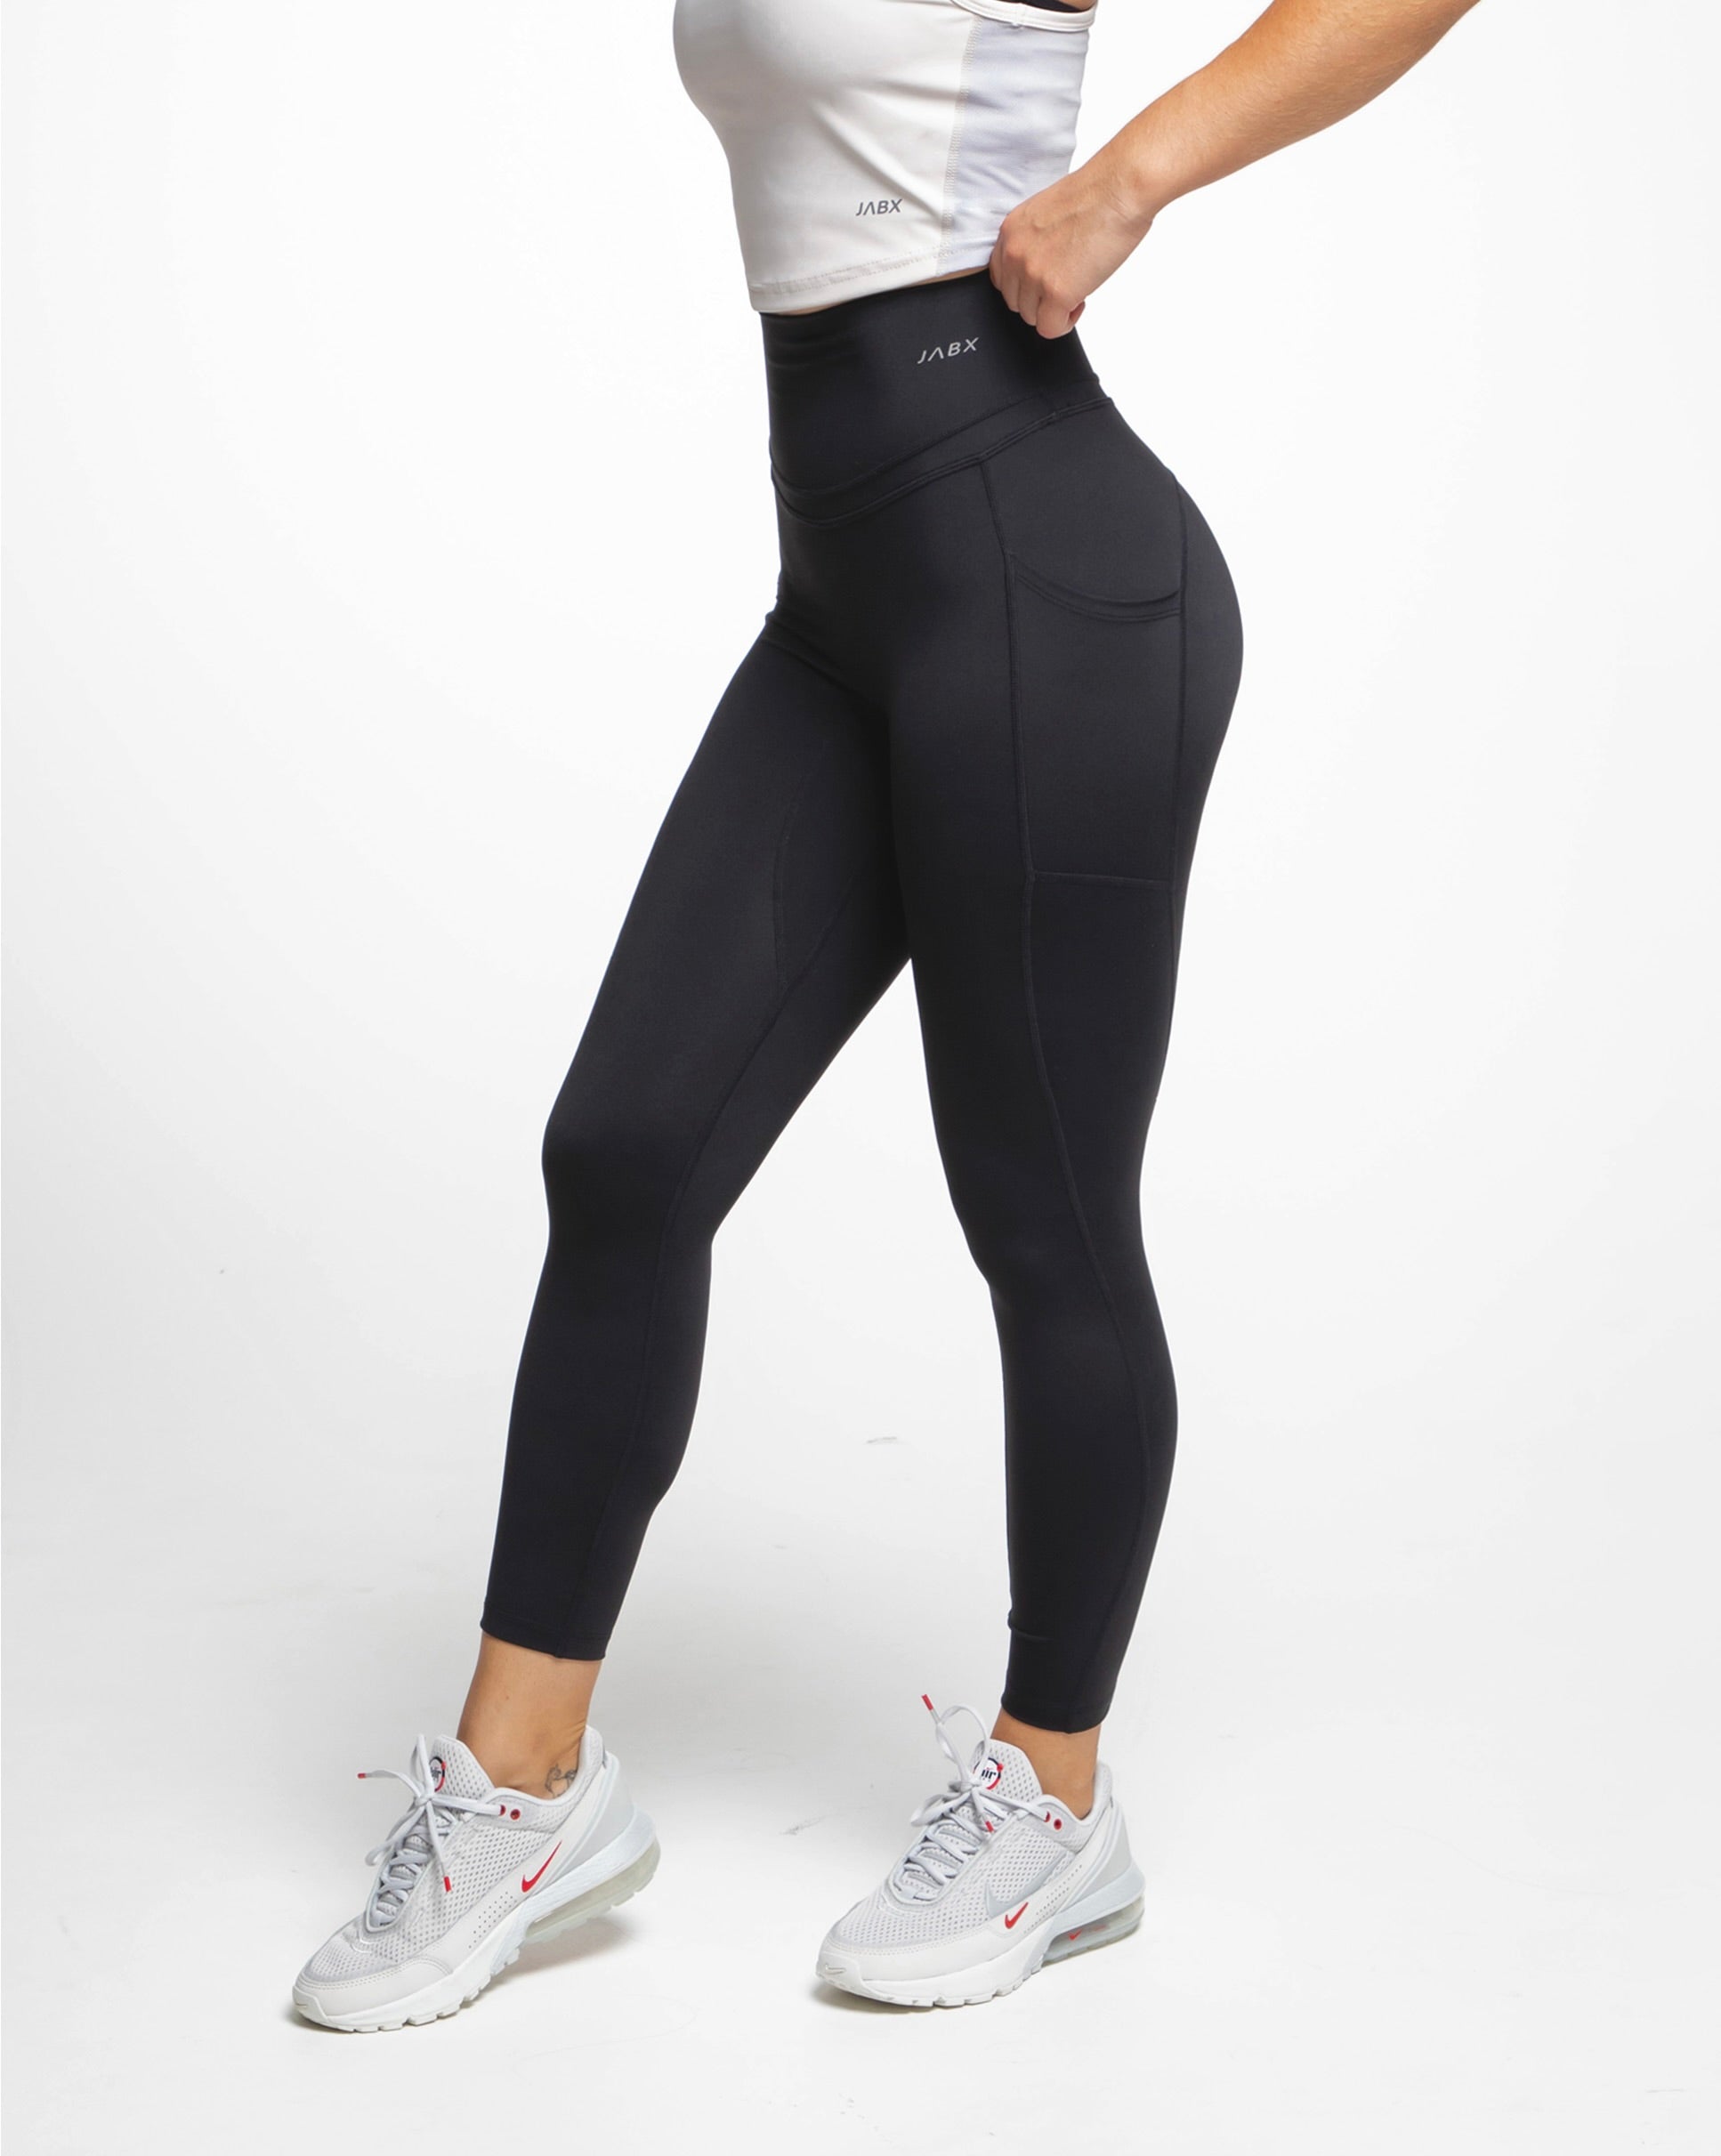 Side Pocket Basic Black Workout Leggings – Hazel Avenue